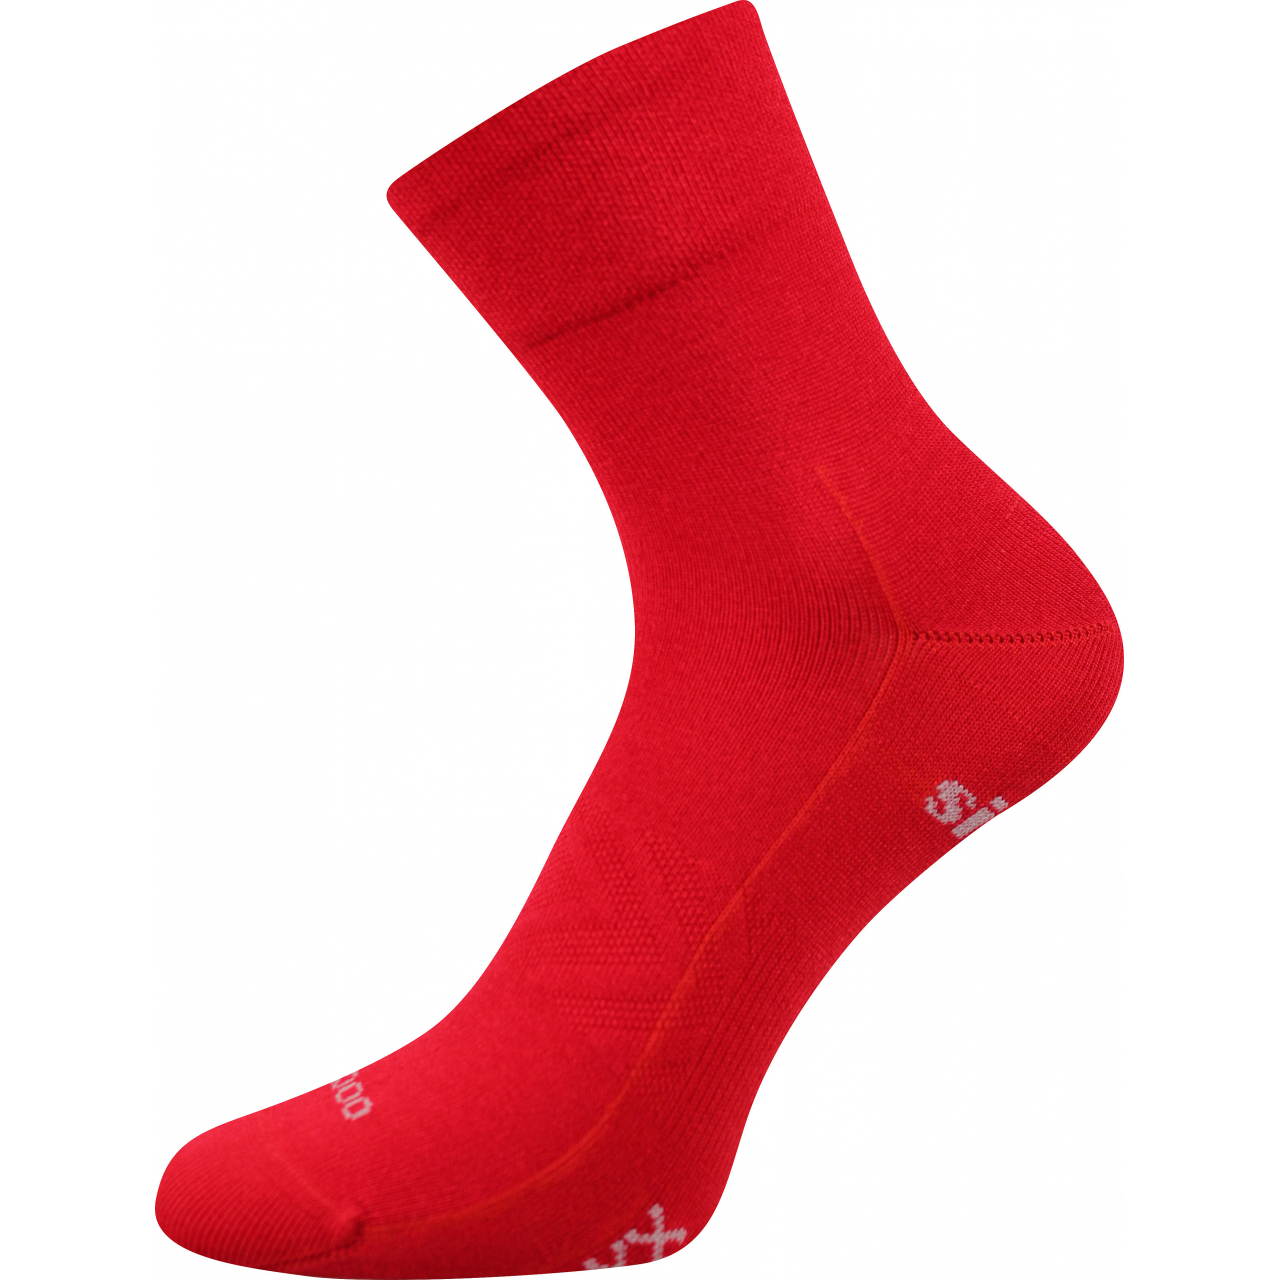 Ponožky sportovní unisex Voxx Baeron - červené, 39-42